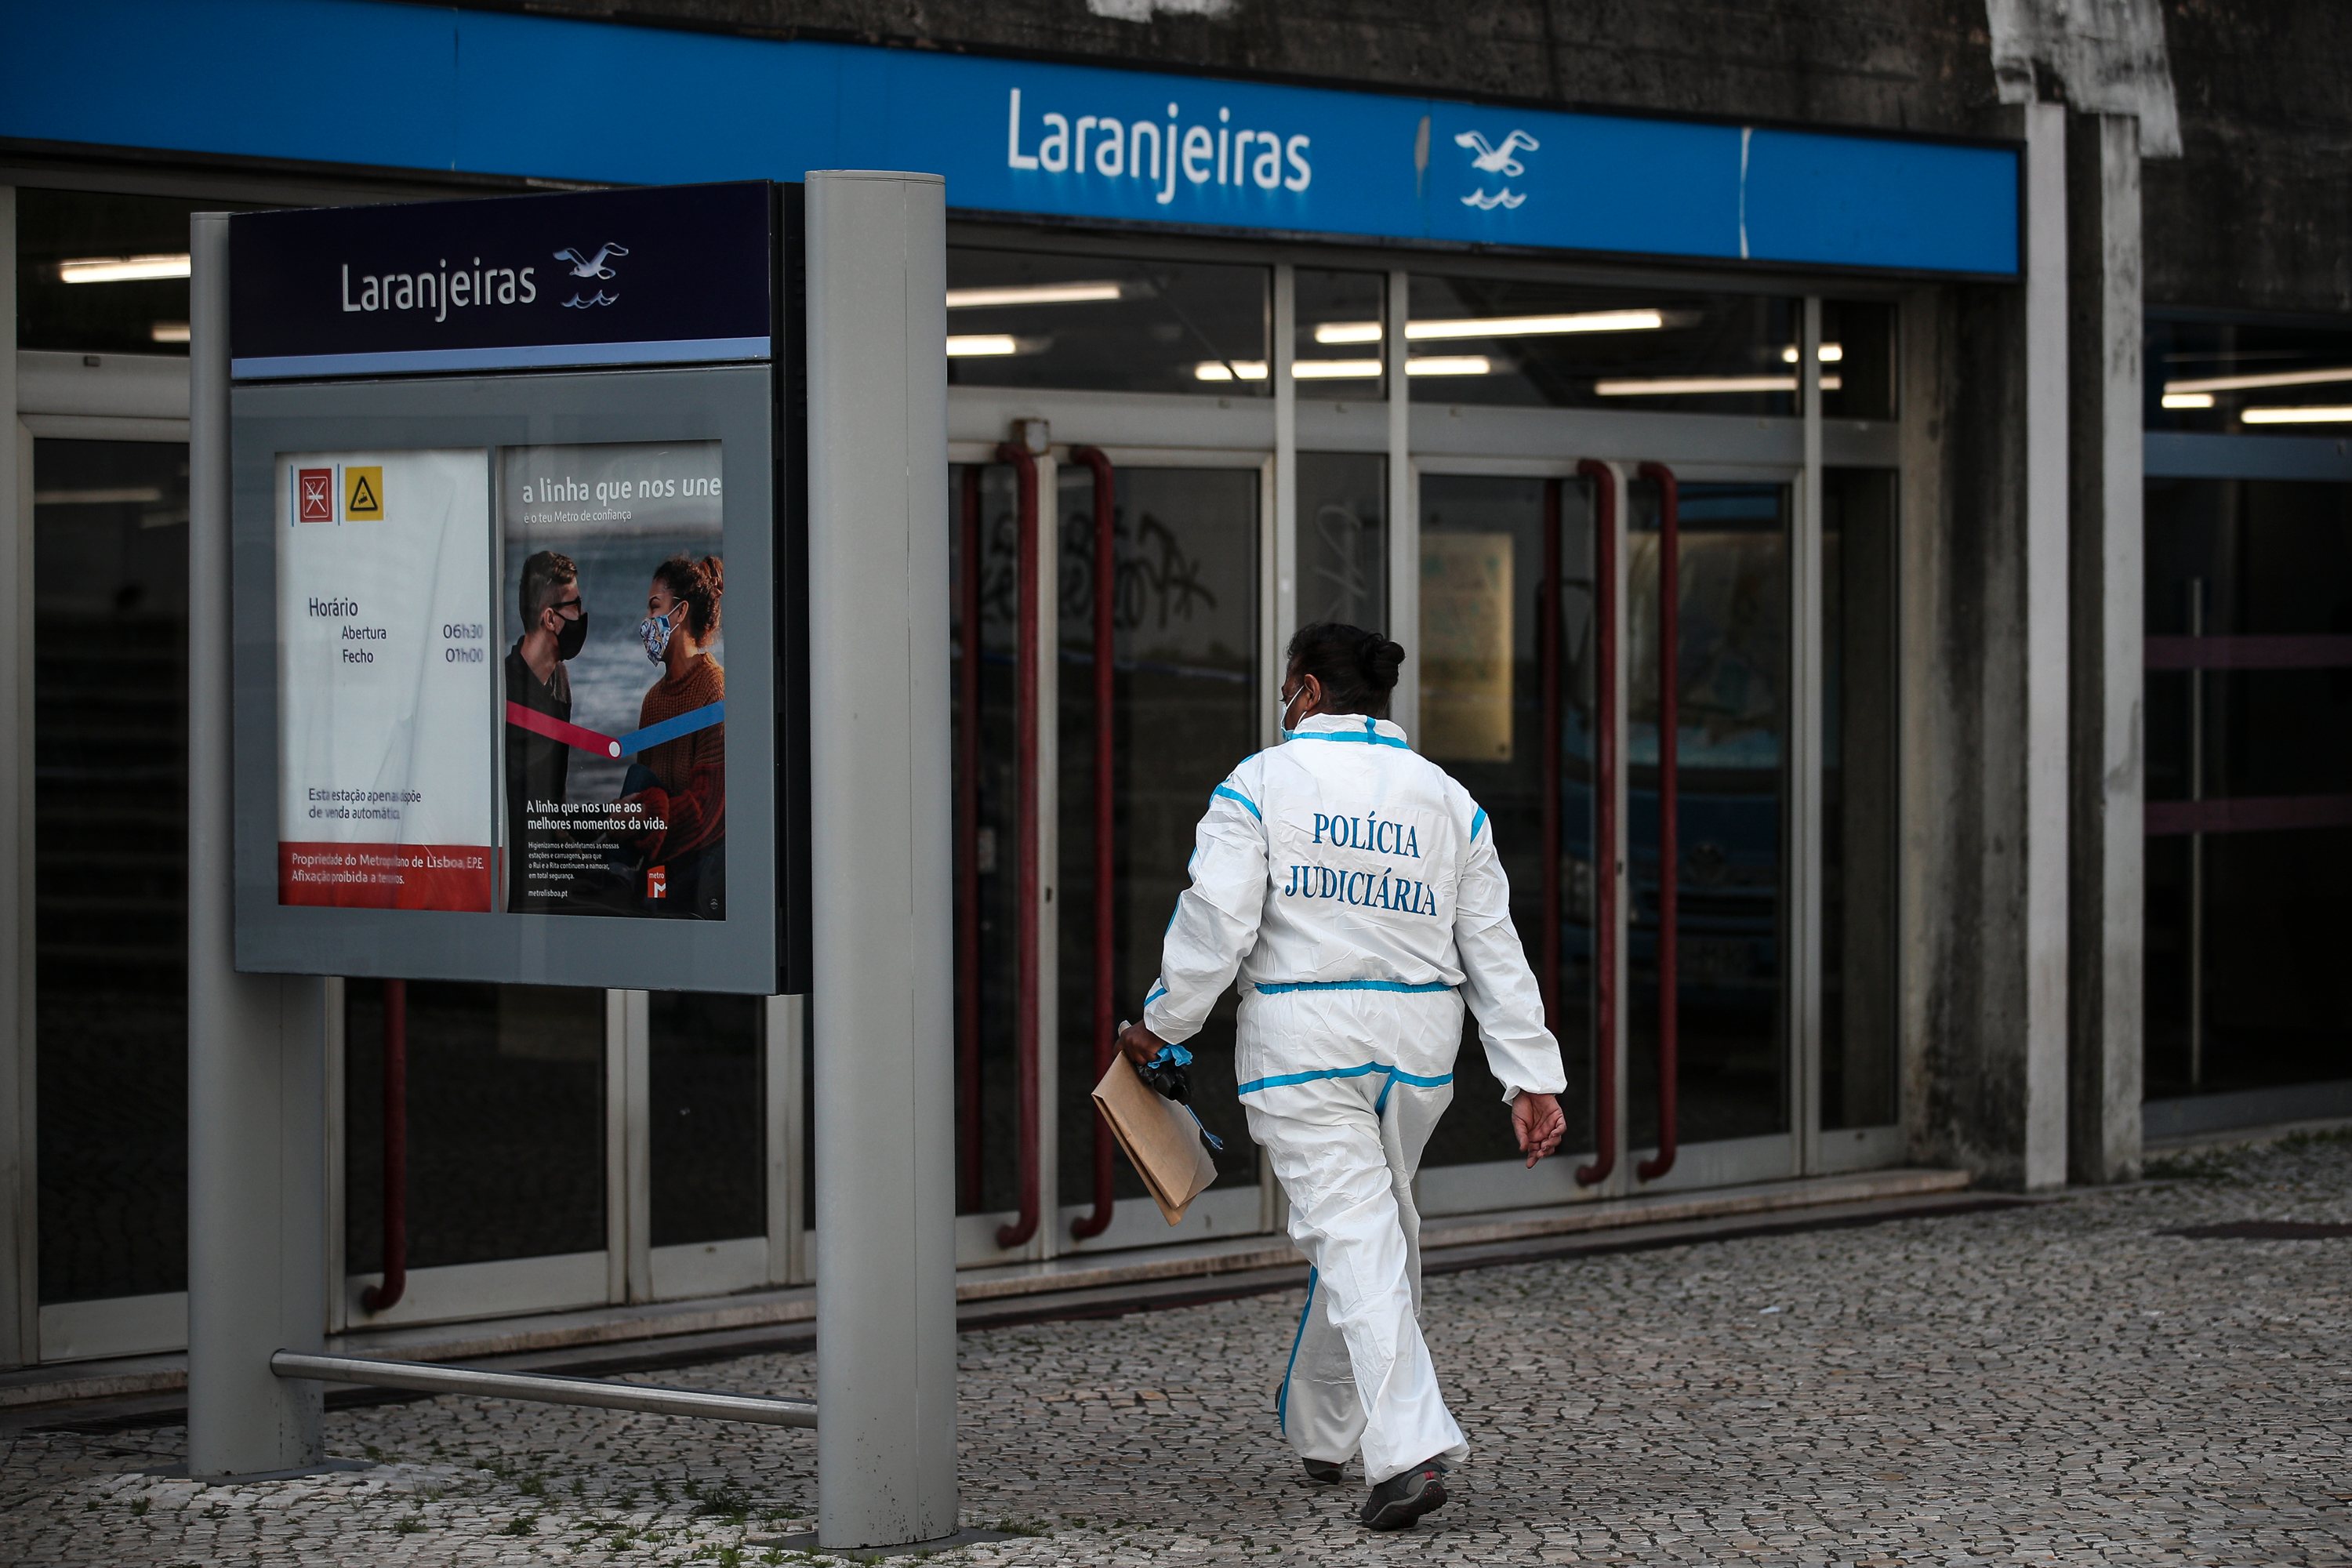 Detidos três suspeitos após morte de jovem que foi esfaqueado na estação de metro das Laranjeiras em Lisboa